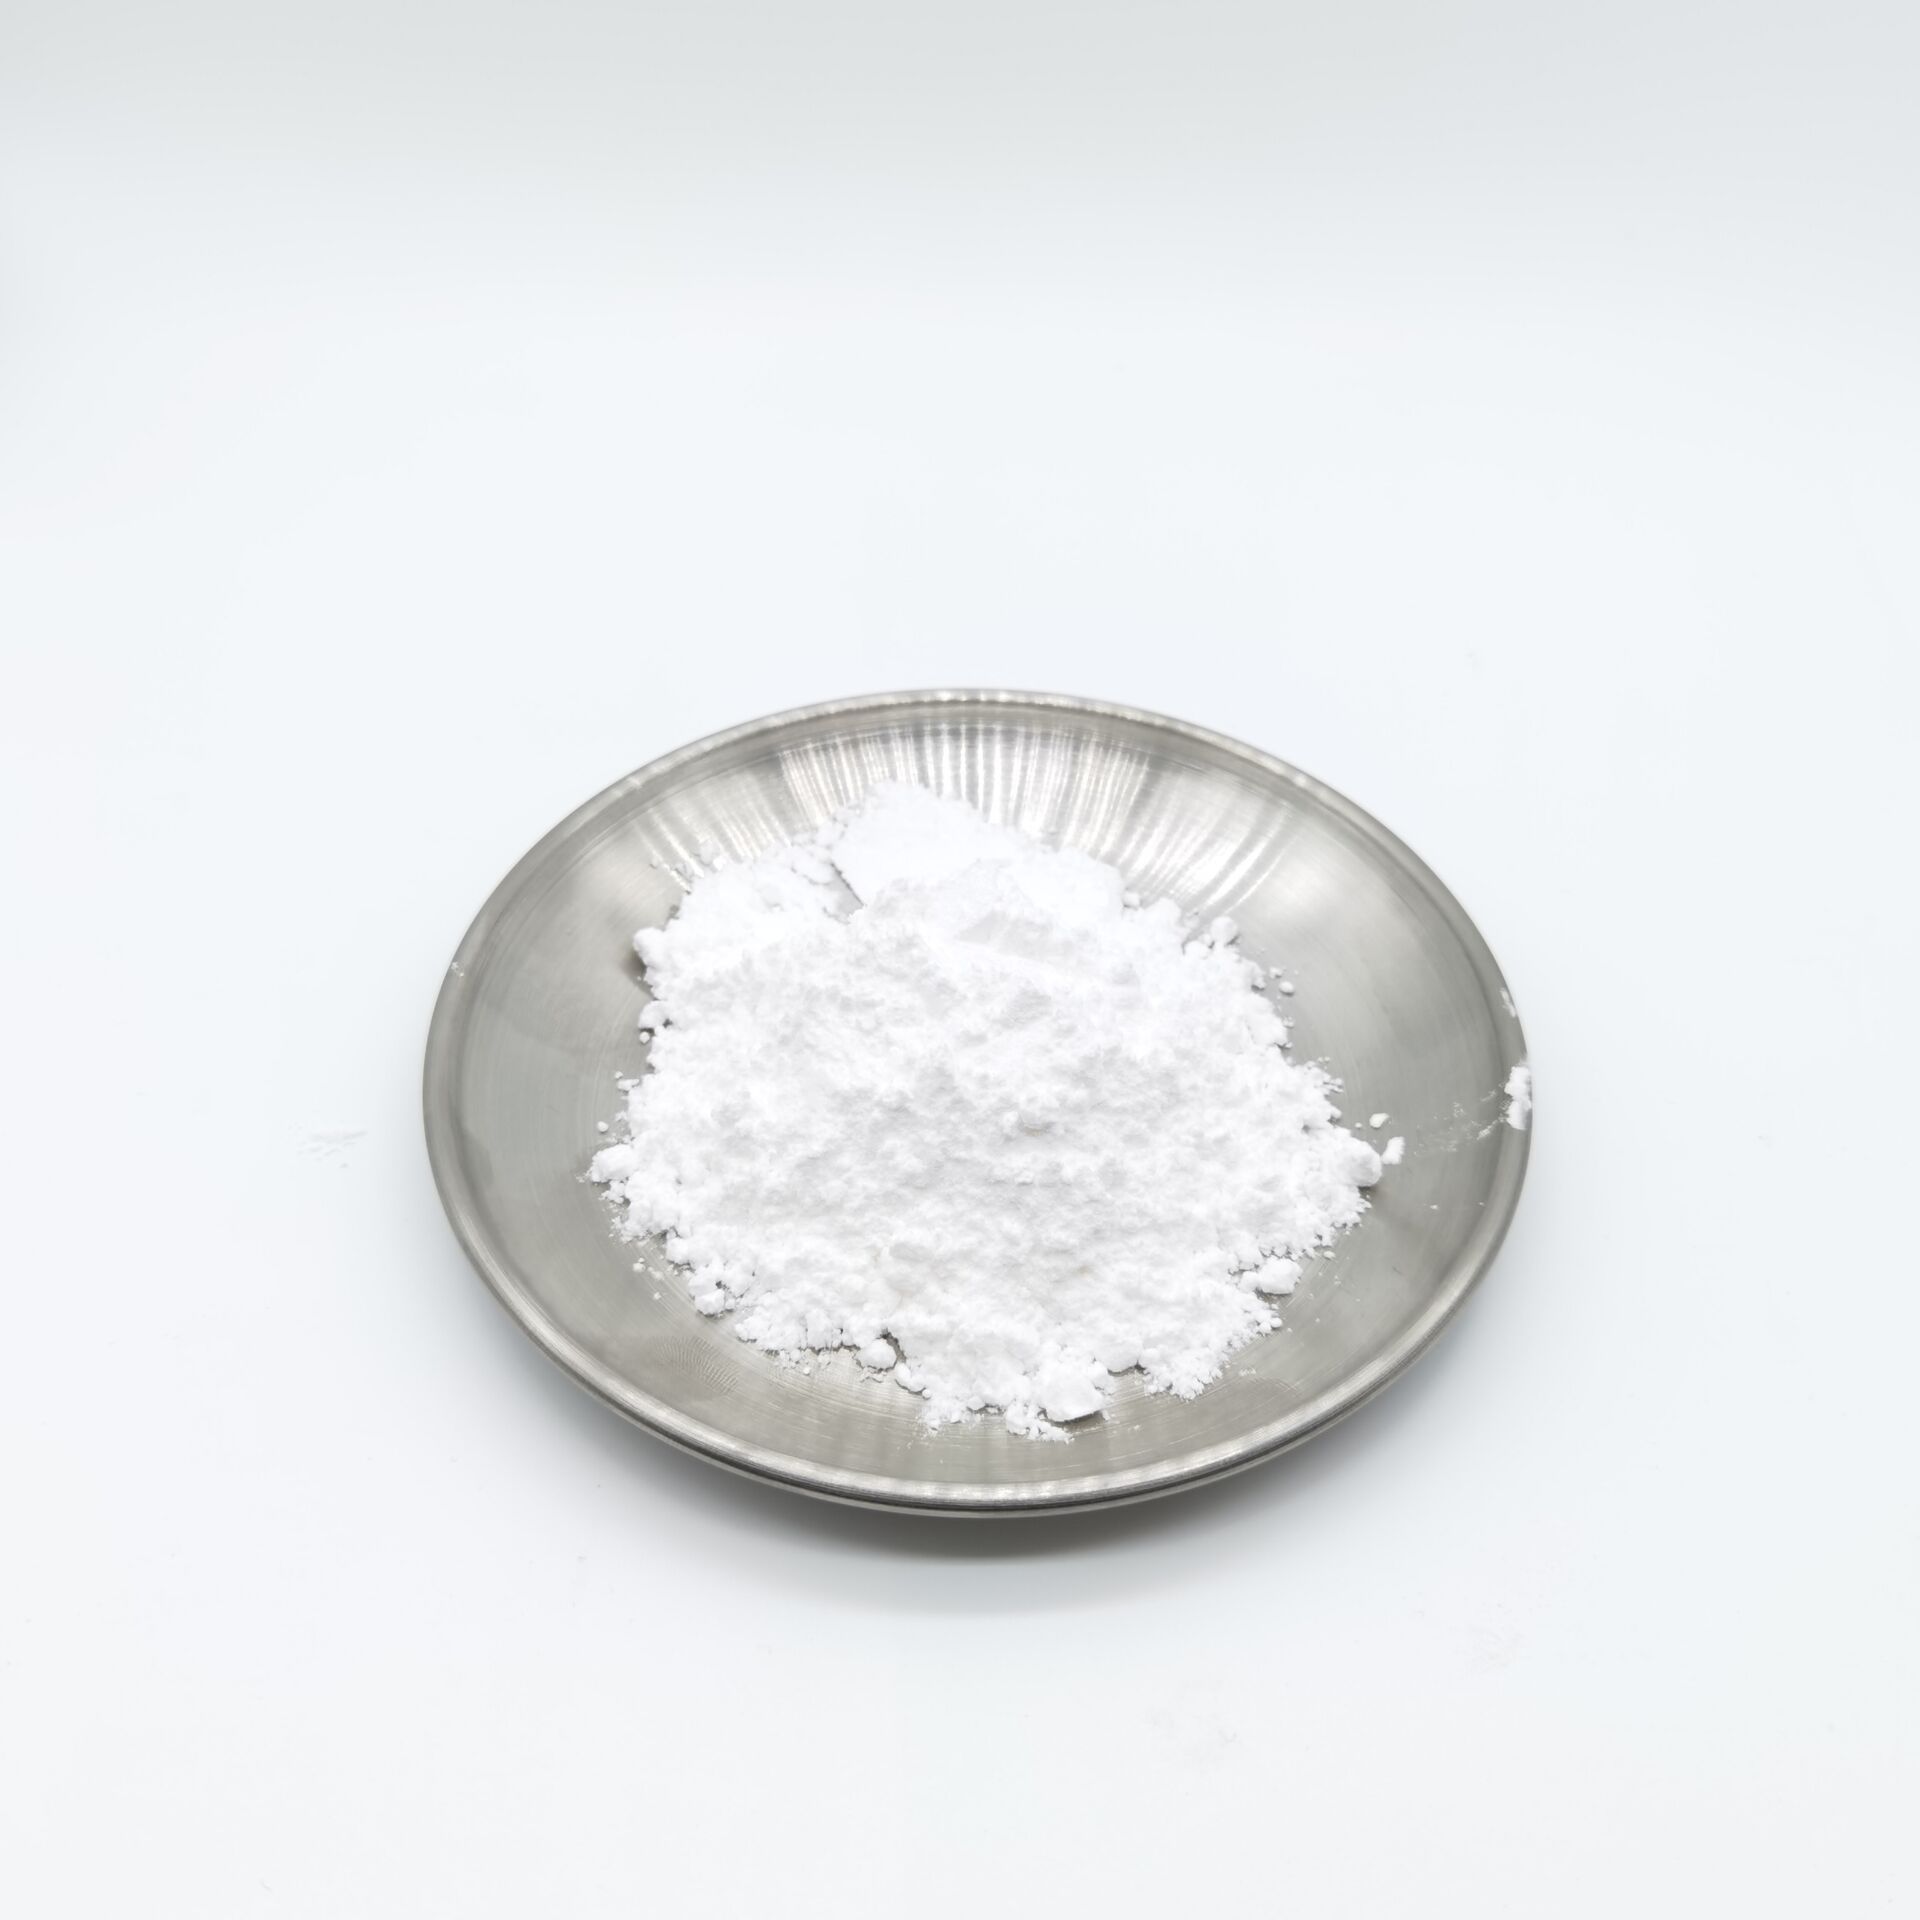 Materia prima cosmética Extracto de raíz de regaliz Glabridin 98% Glabridin en polvo para blanquear la piel